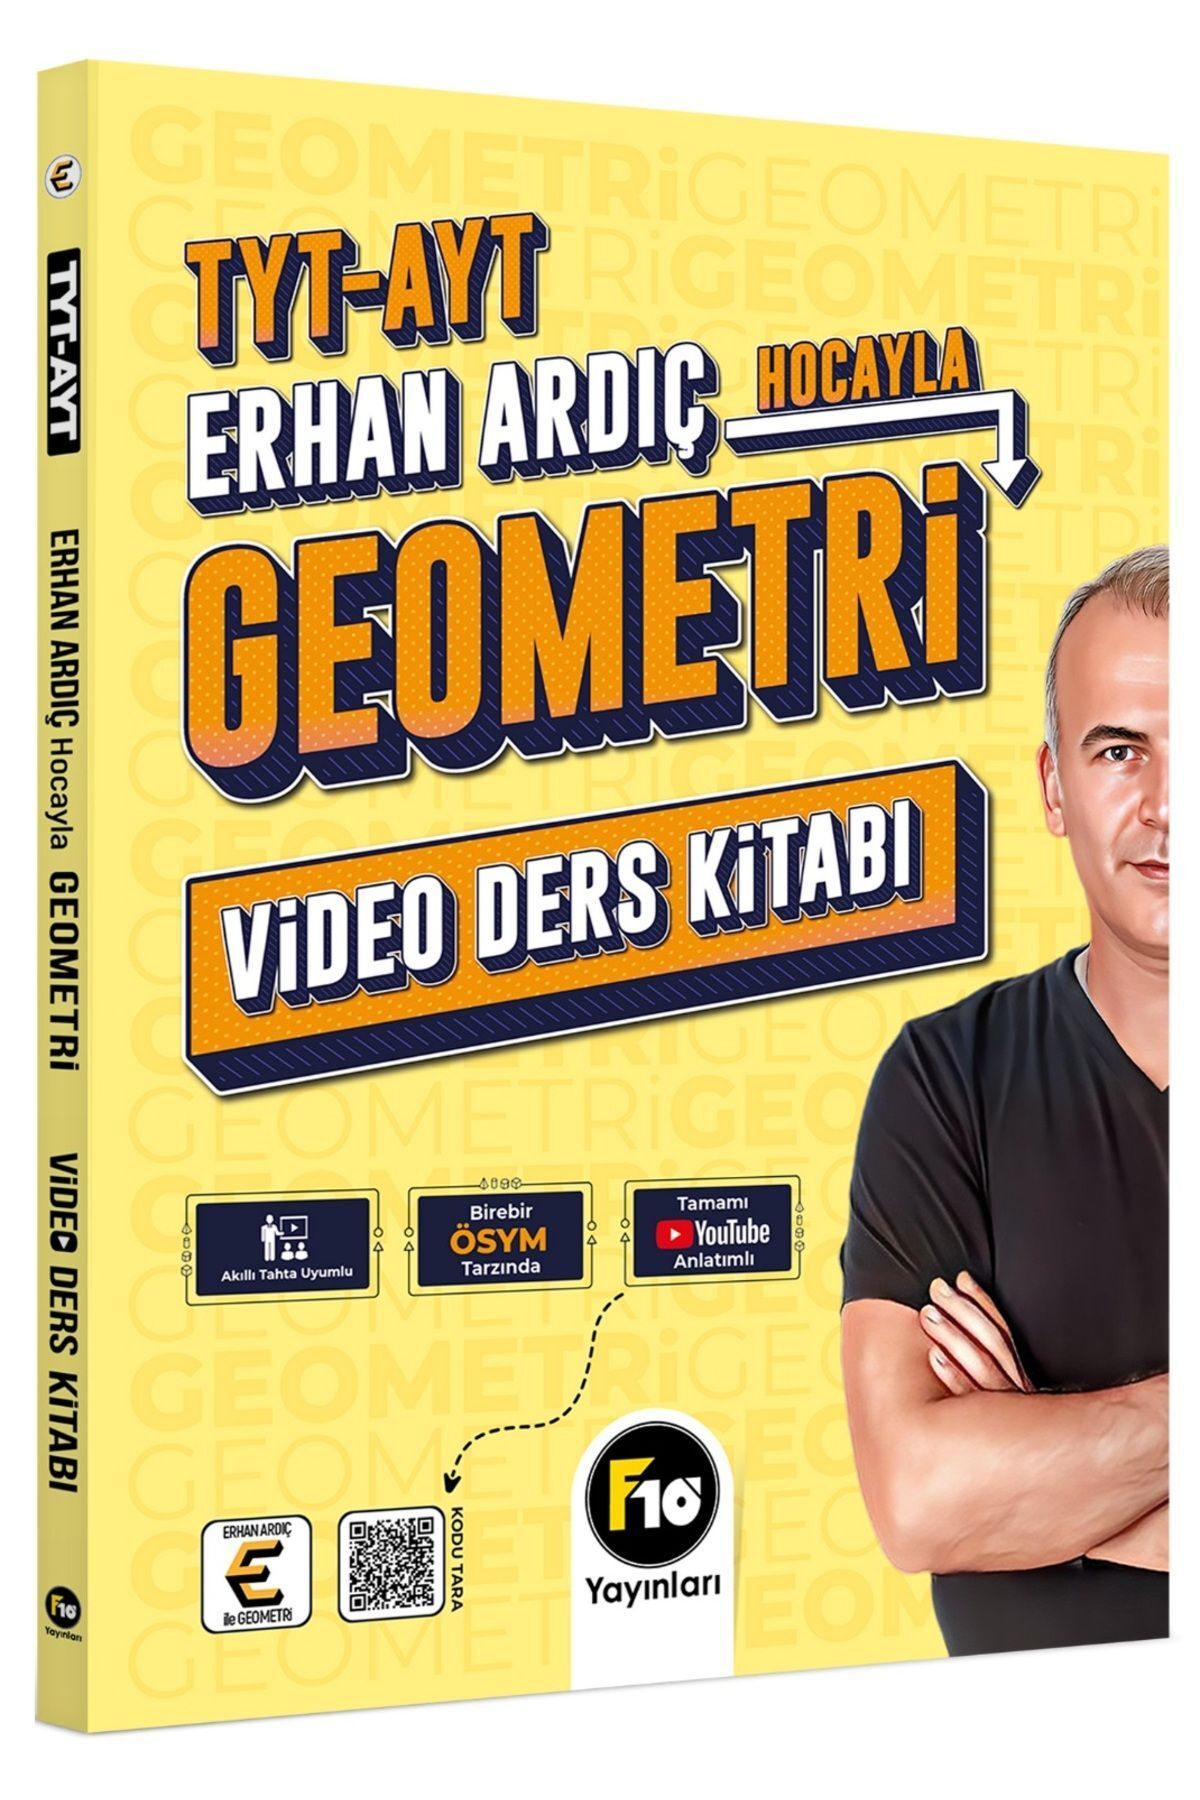 F10 Yayınları Tyt Ayt Erhan Ardıç Hocayla Geometri Video Ders Kitabı